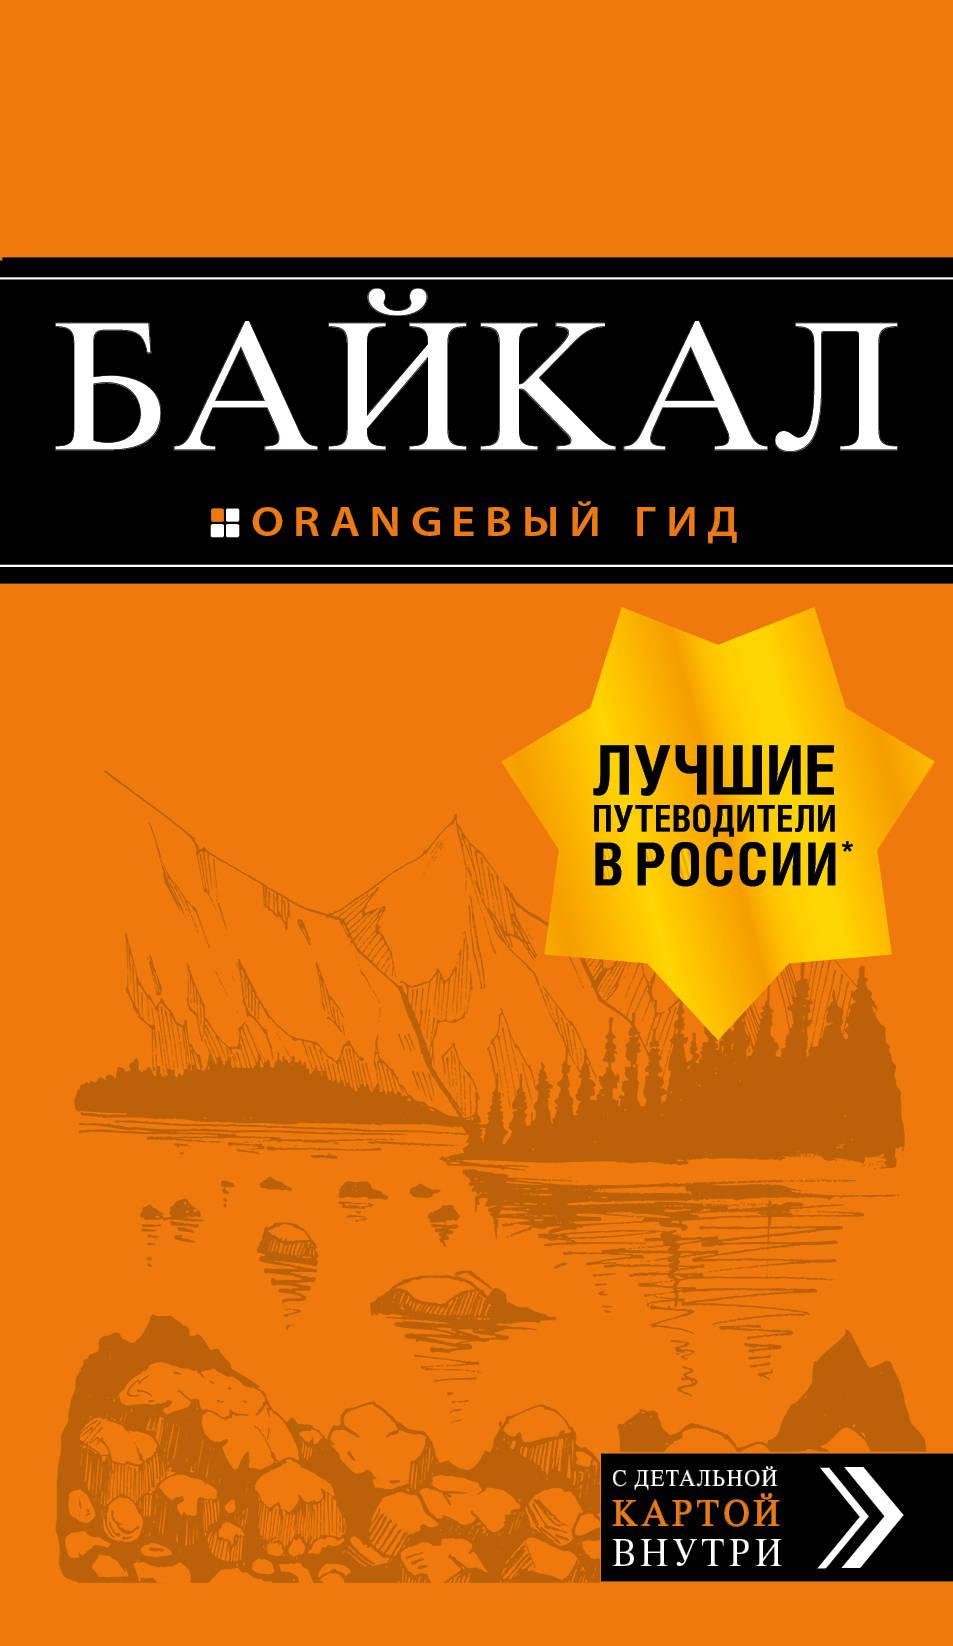 Байкал: путеводитель + карта. 2-е изд. испр. и доп.